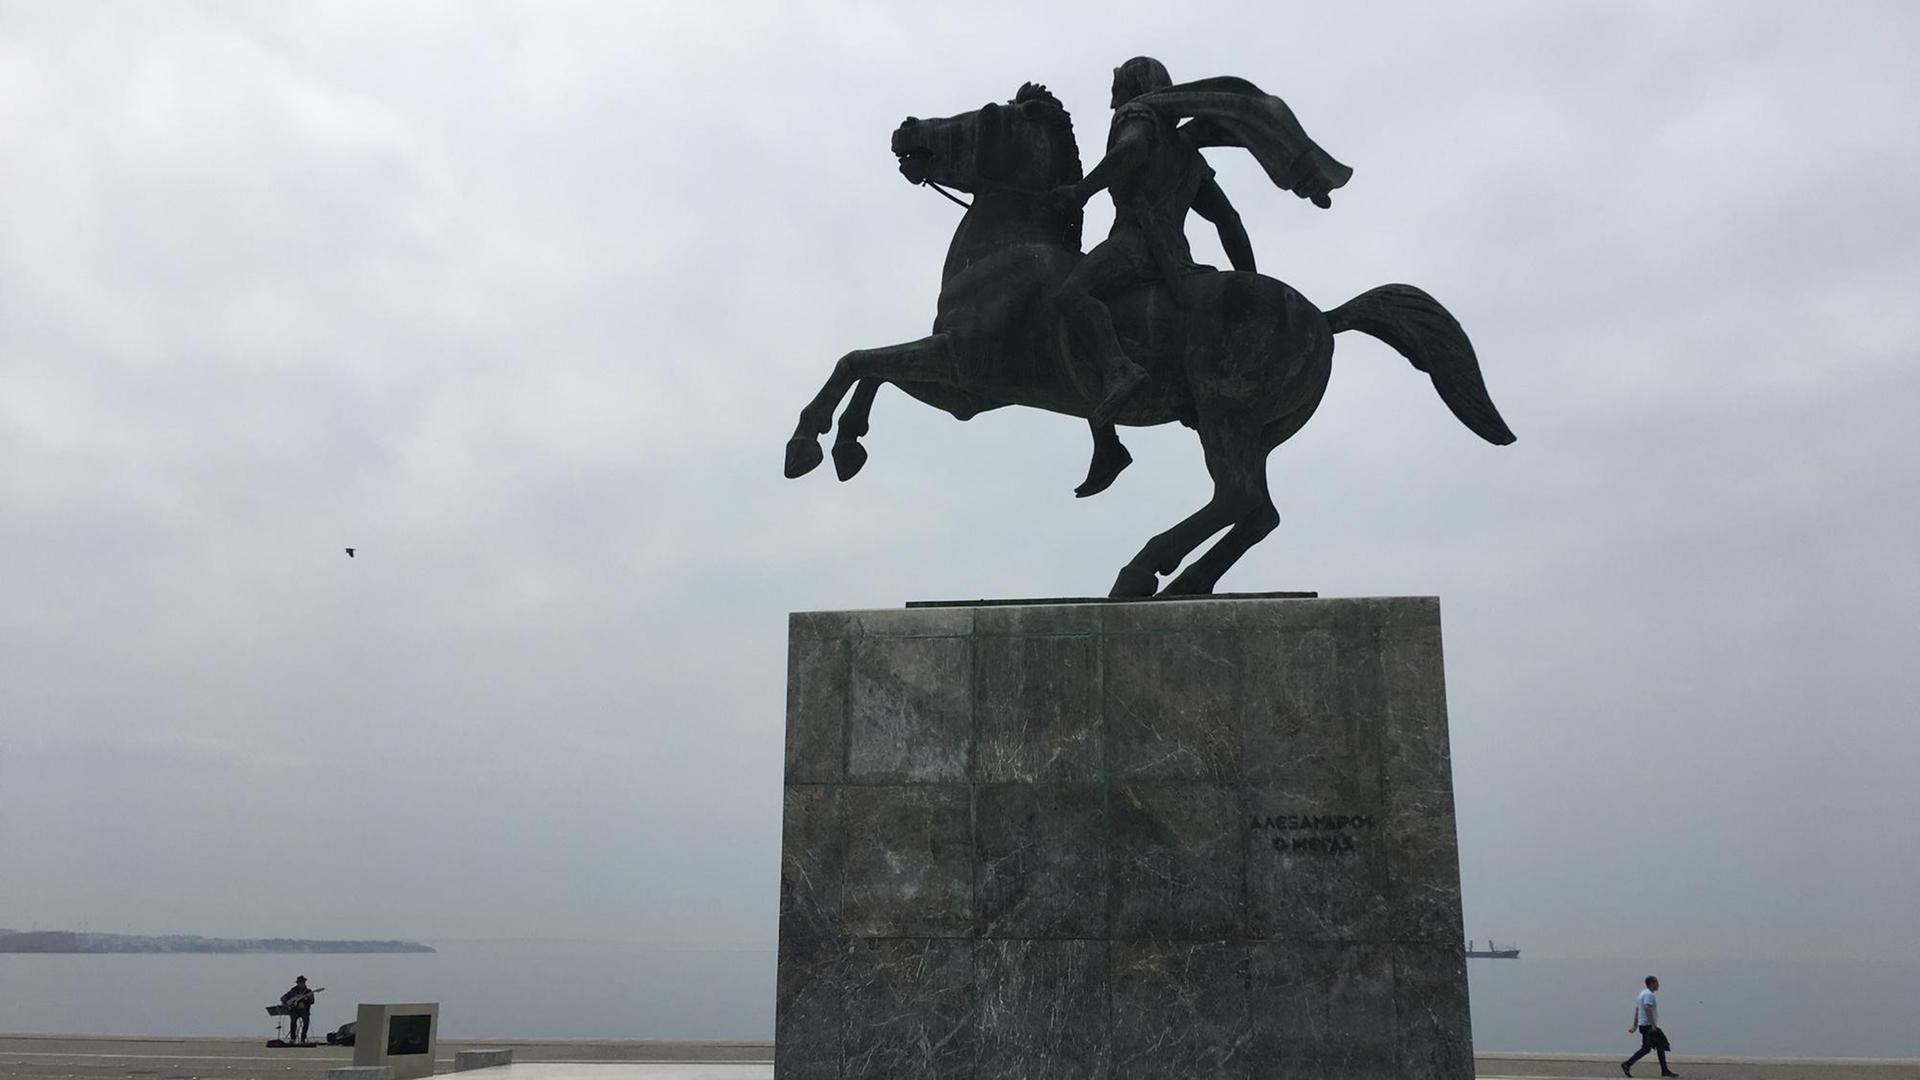 Eine Statue von Alexander dem Großen als Reiter auf seinem Pferd auf einem Platz in Thessaloniki in Griechenland